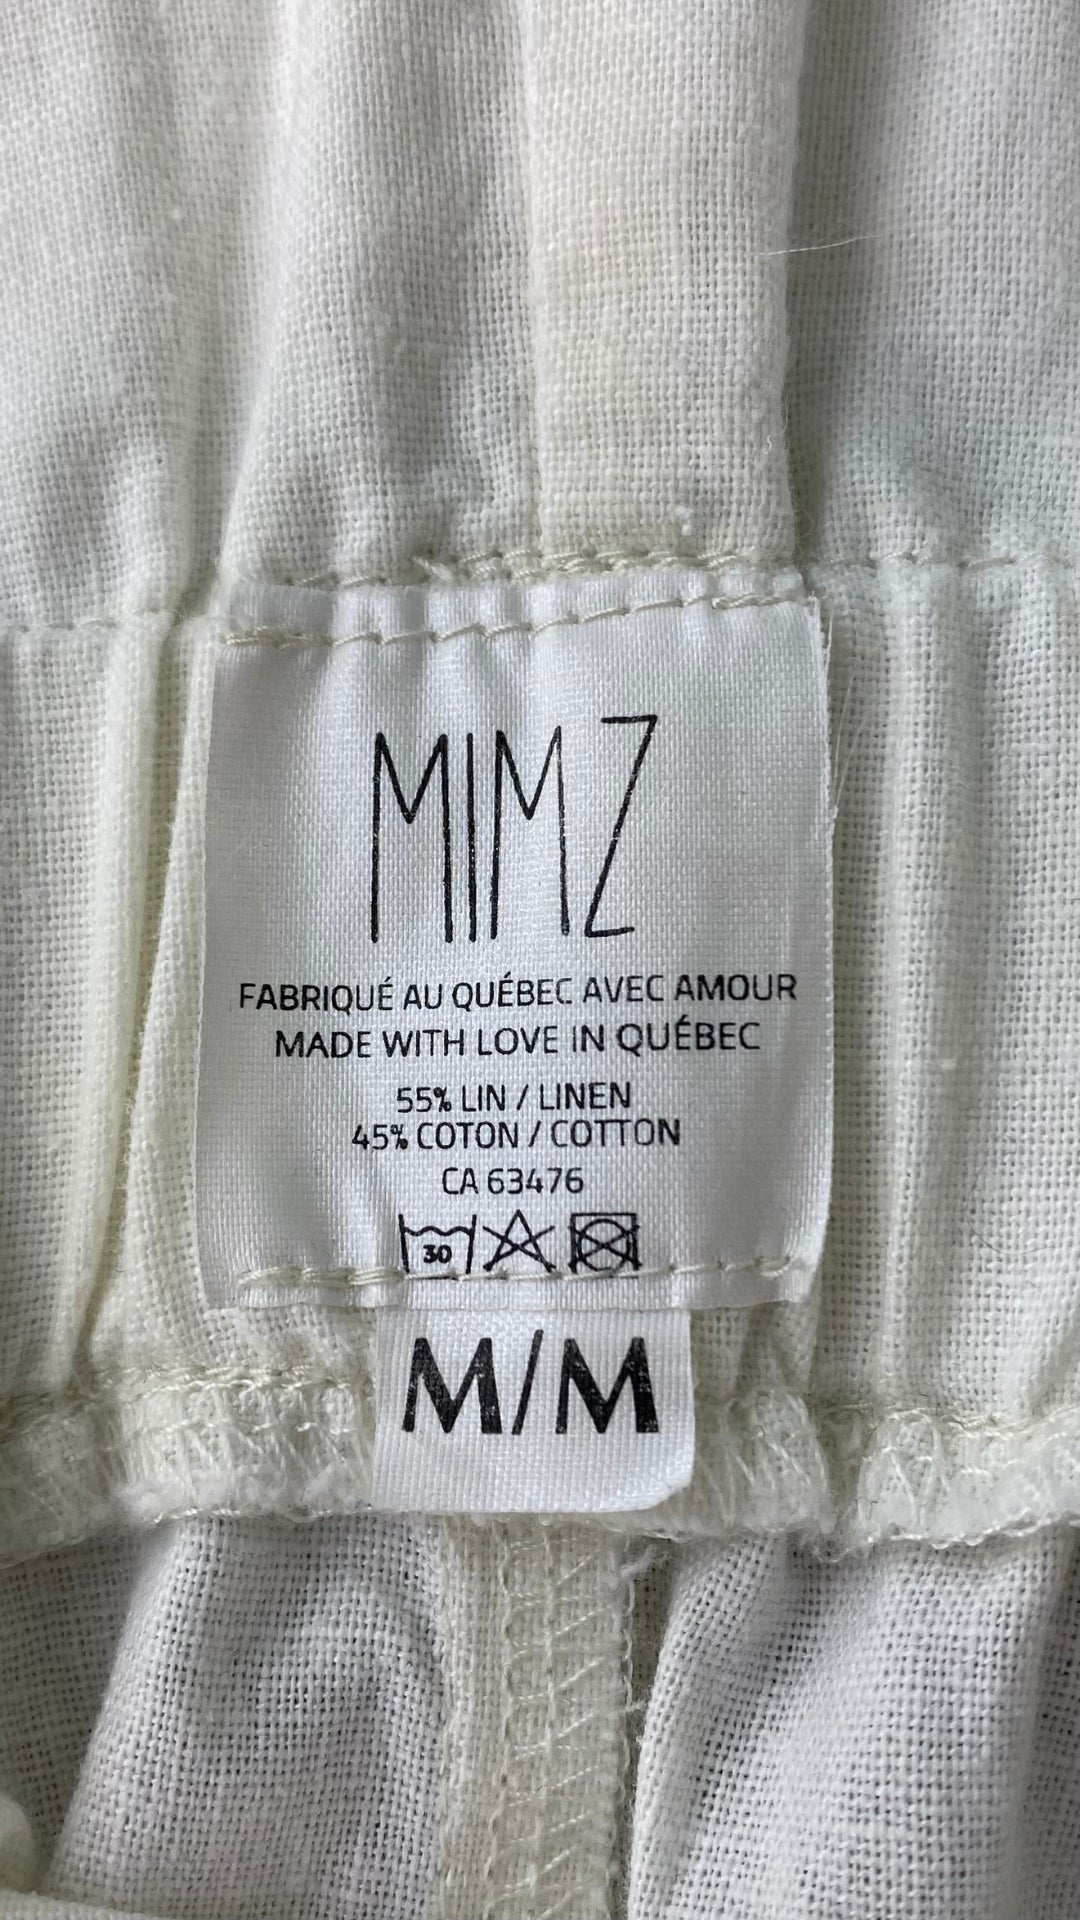 Short ivoire en mélange de lin et coton, marque Mimz, taille medium. Vue de l'étiquette de marque, taille, composition et entretien.